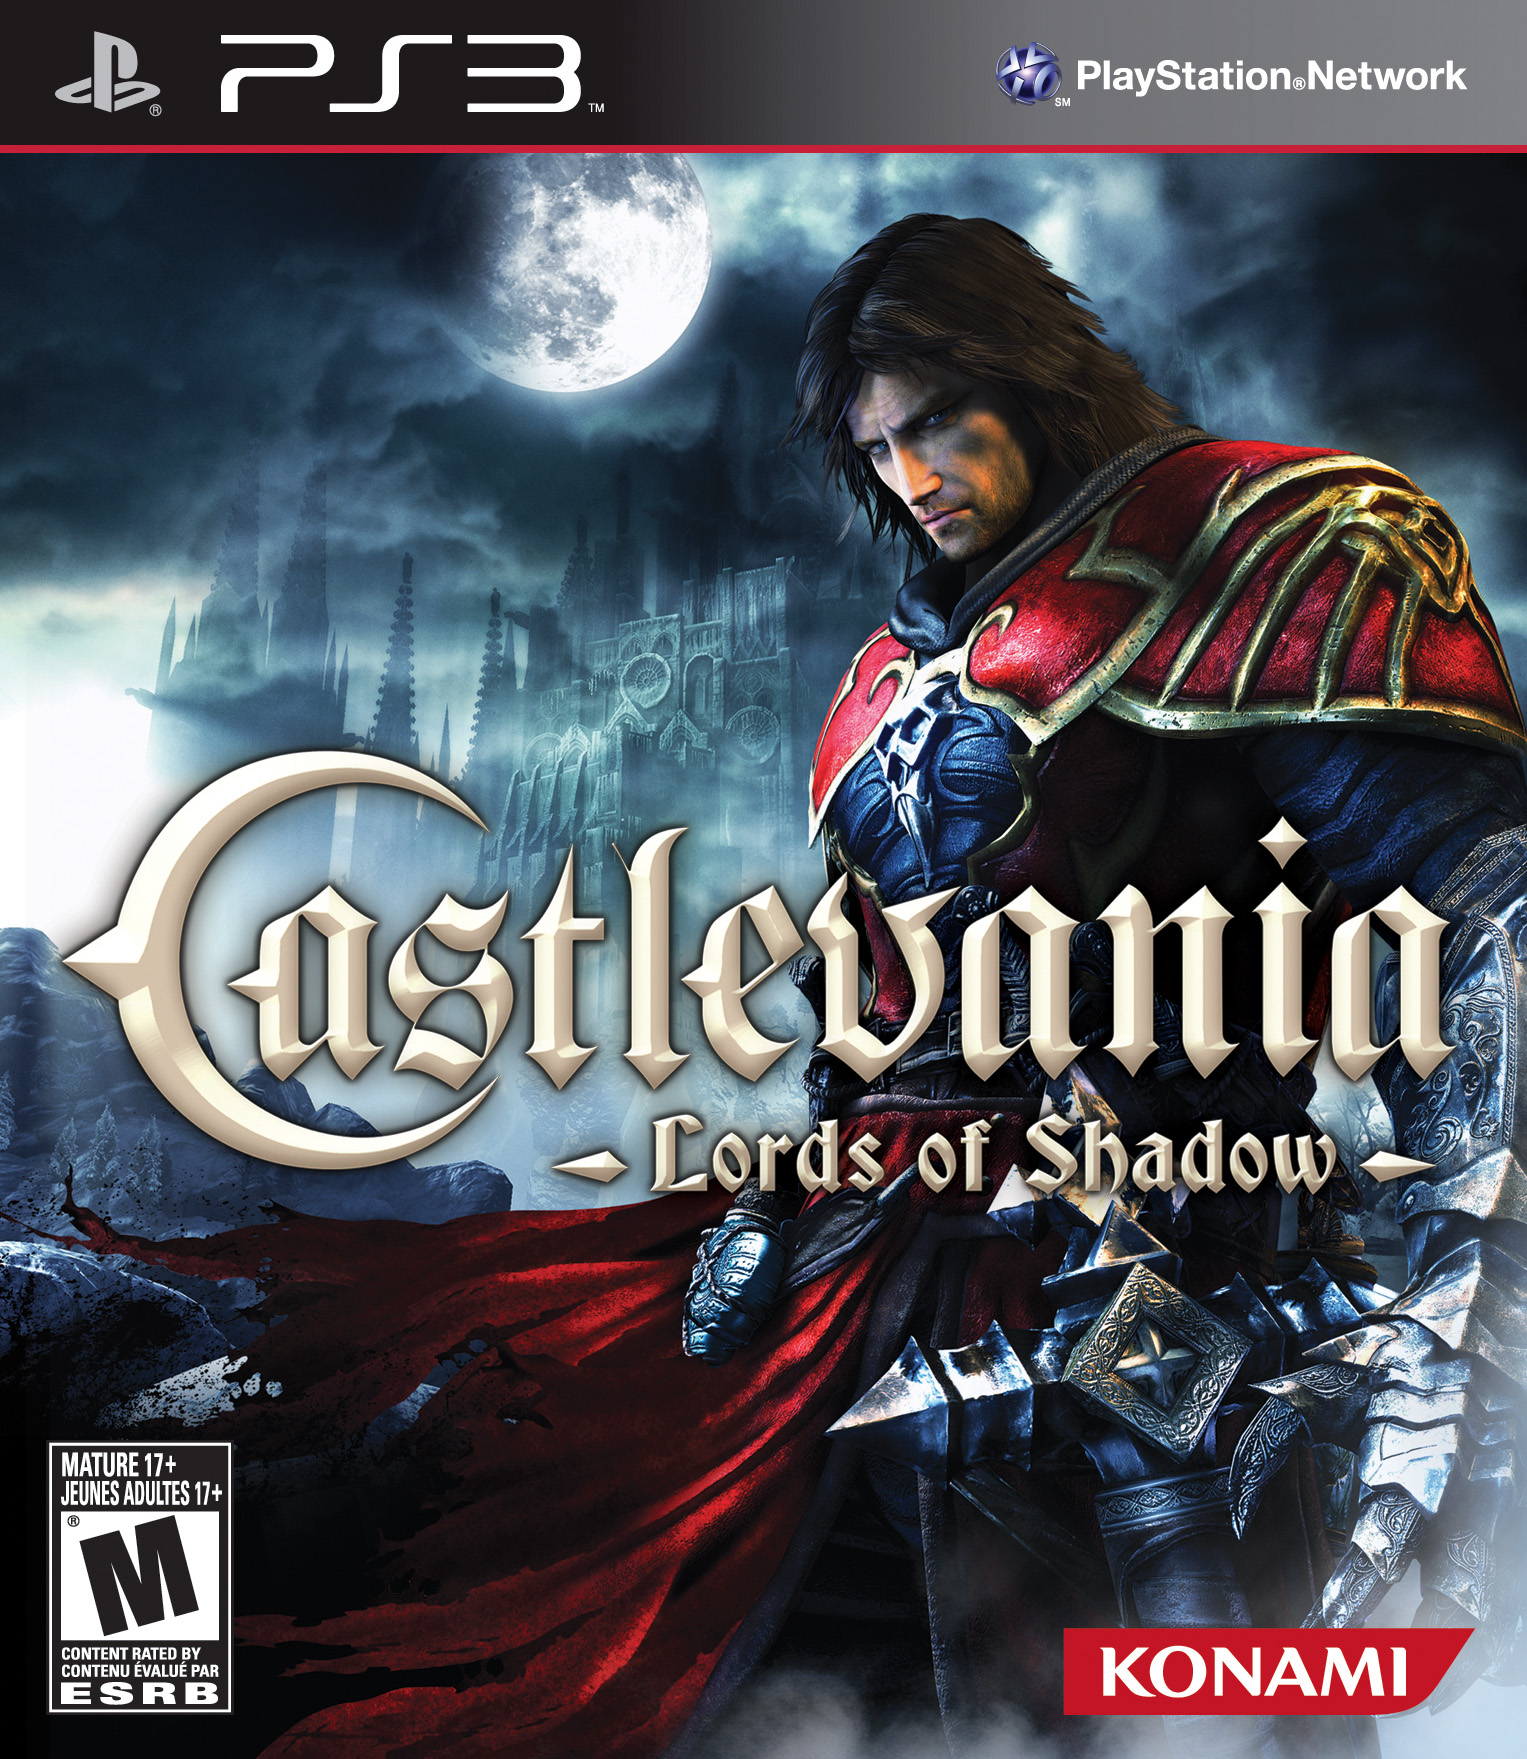 Castlevania: Lords of Shadow – Wikipédia, a enciclopédia livre